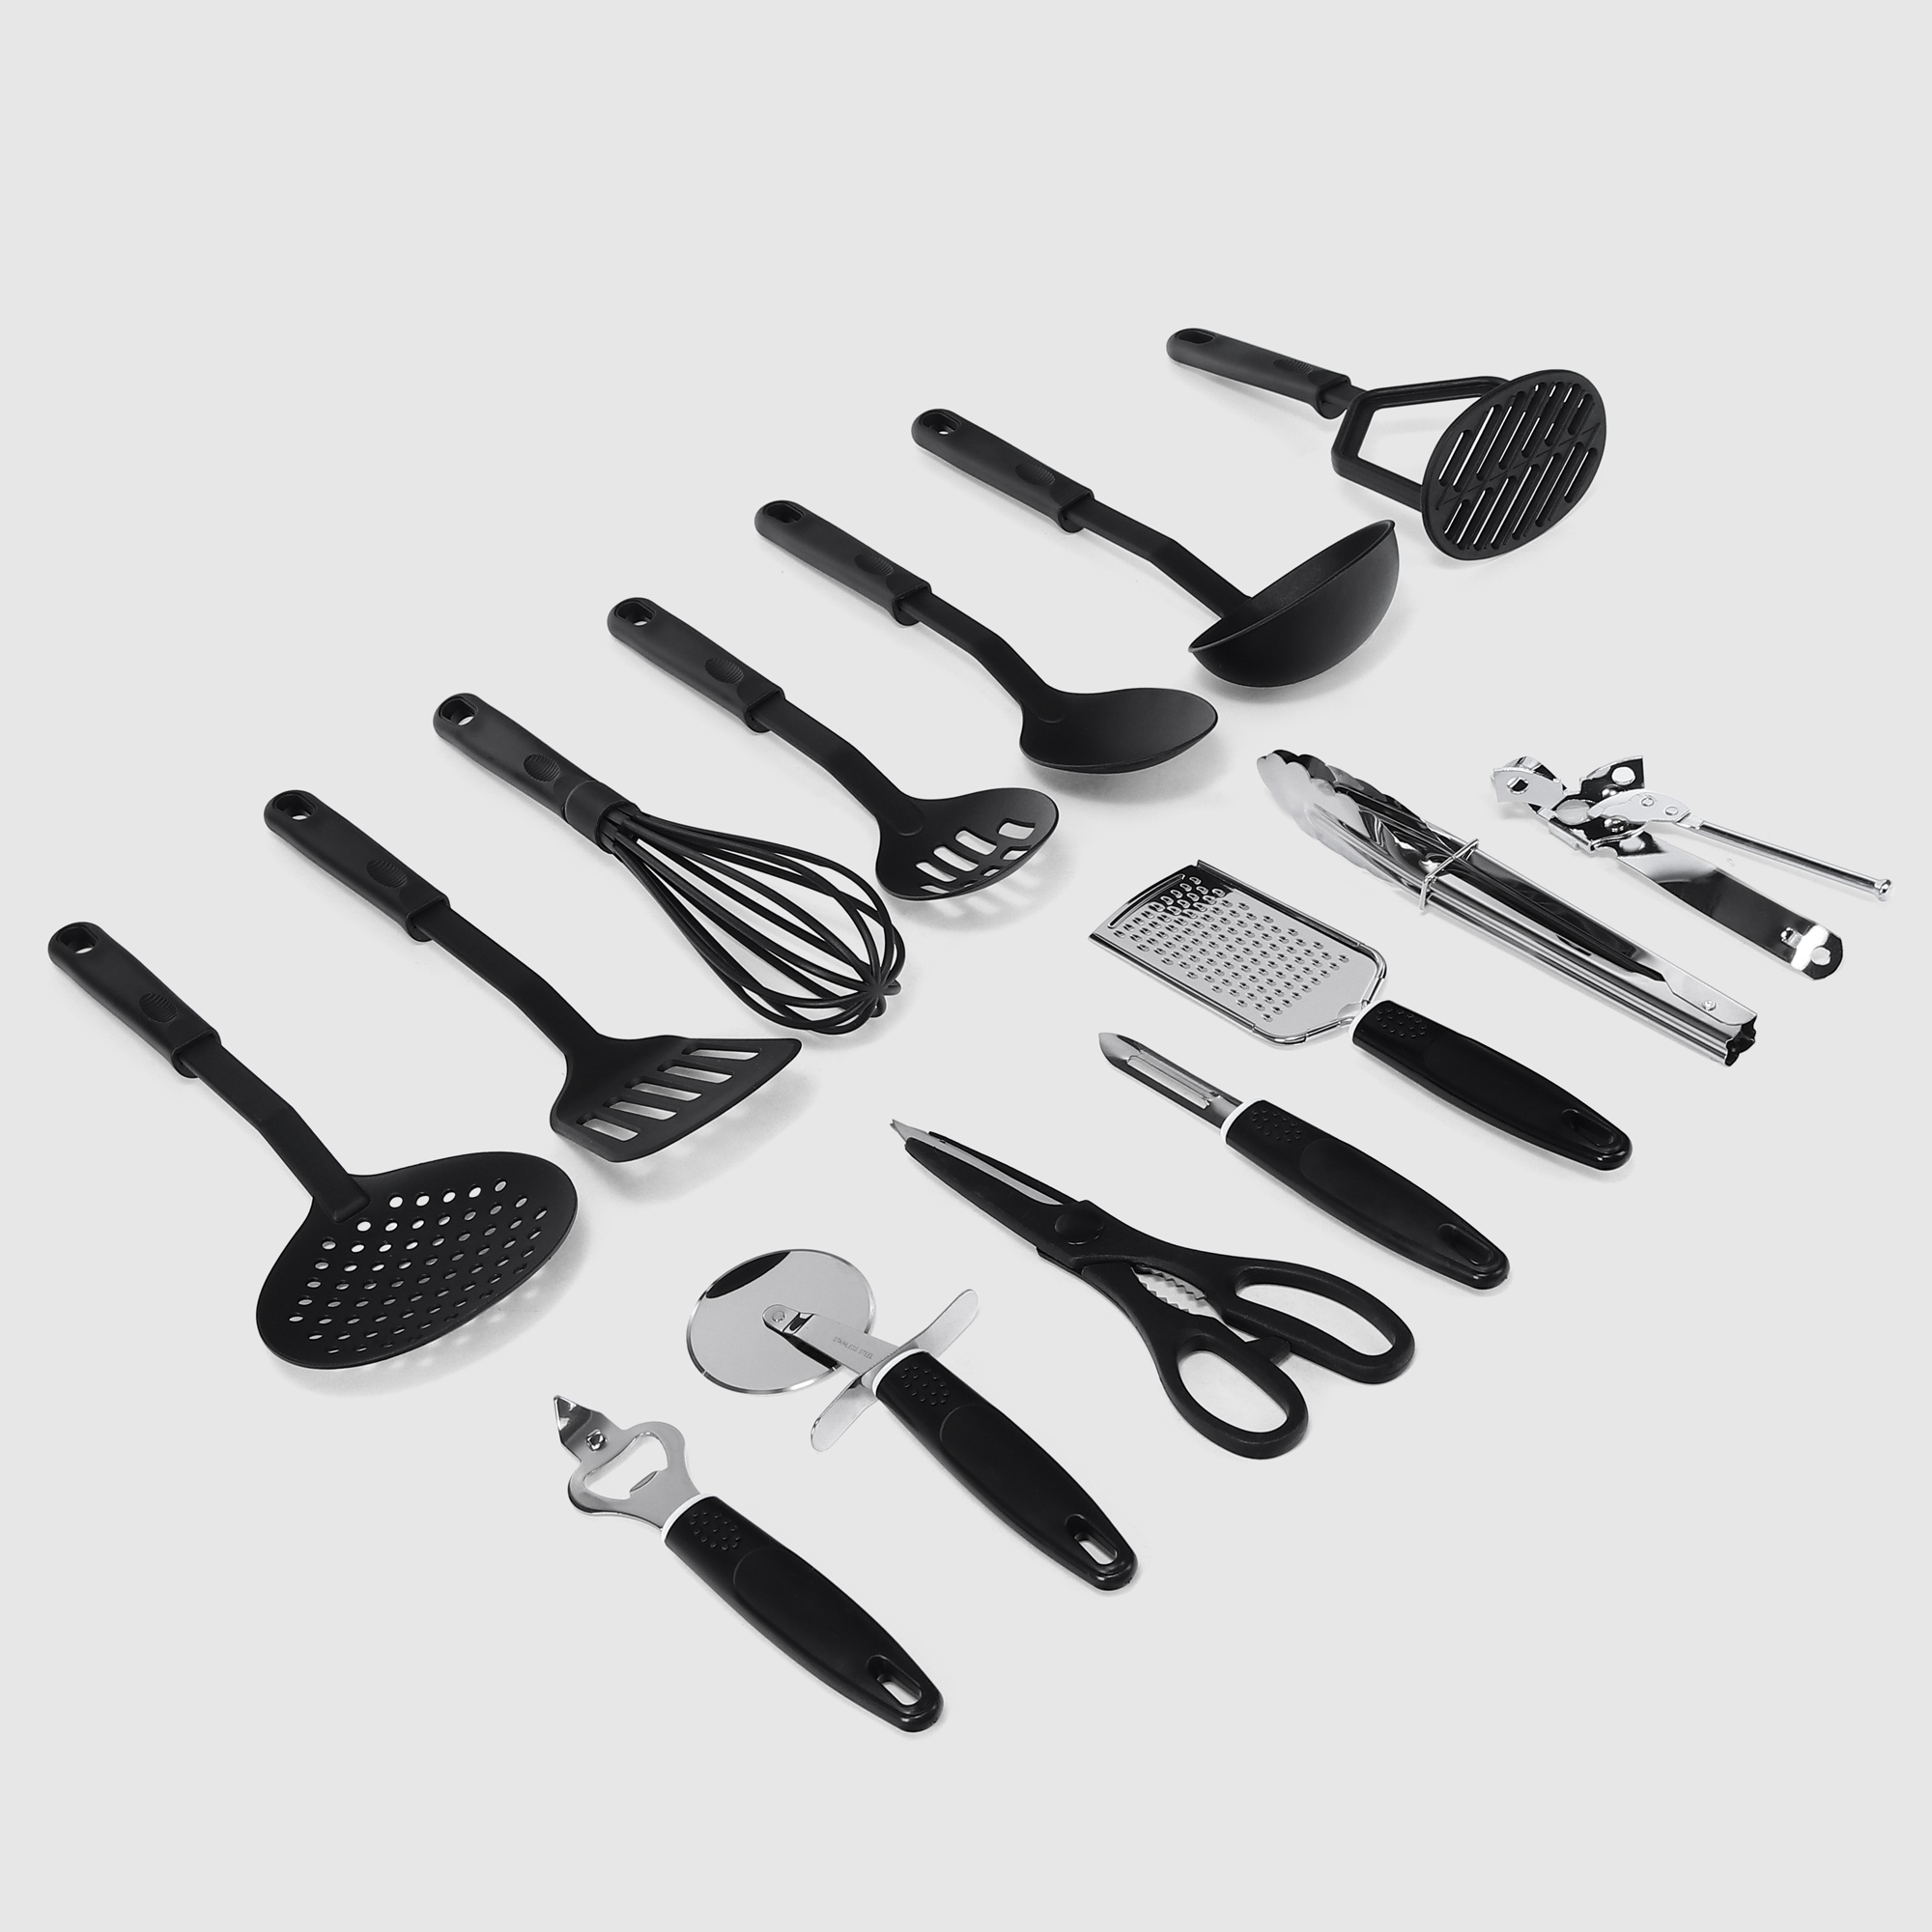 Набор кухонных принадлежностей Vantage 14 предметов черный набор кухонных принадлежностей vantage vkp562 6 предметов